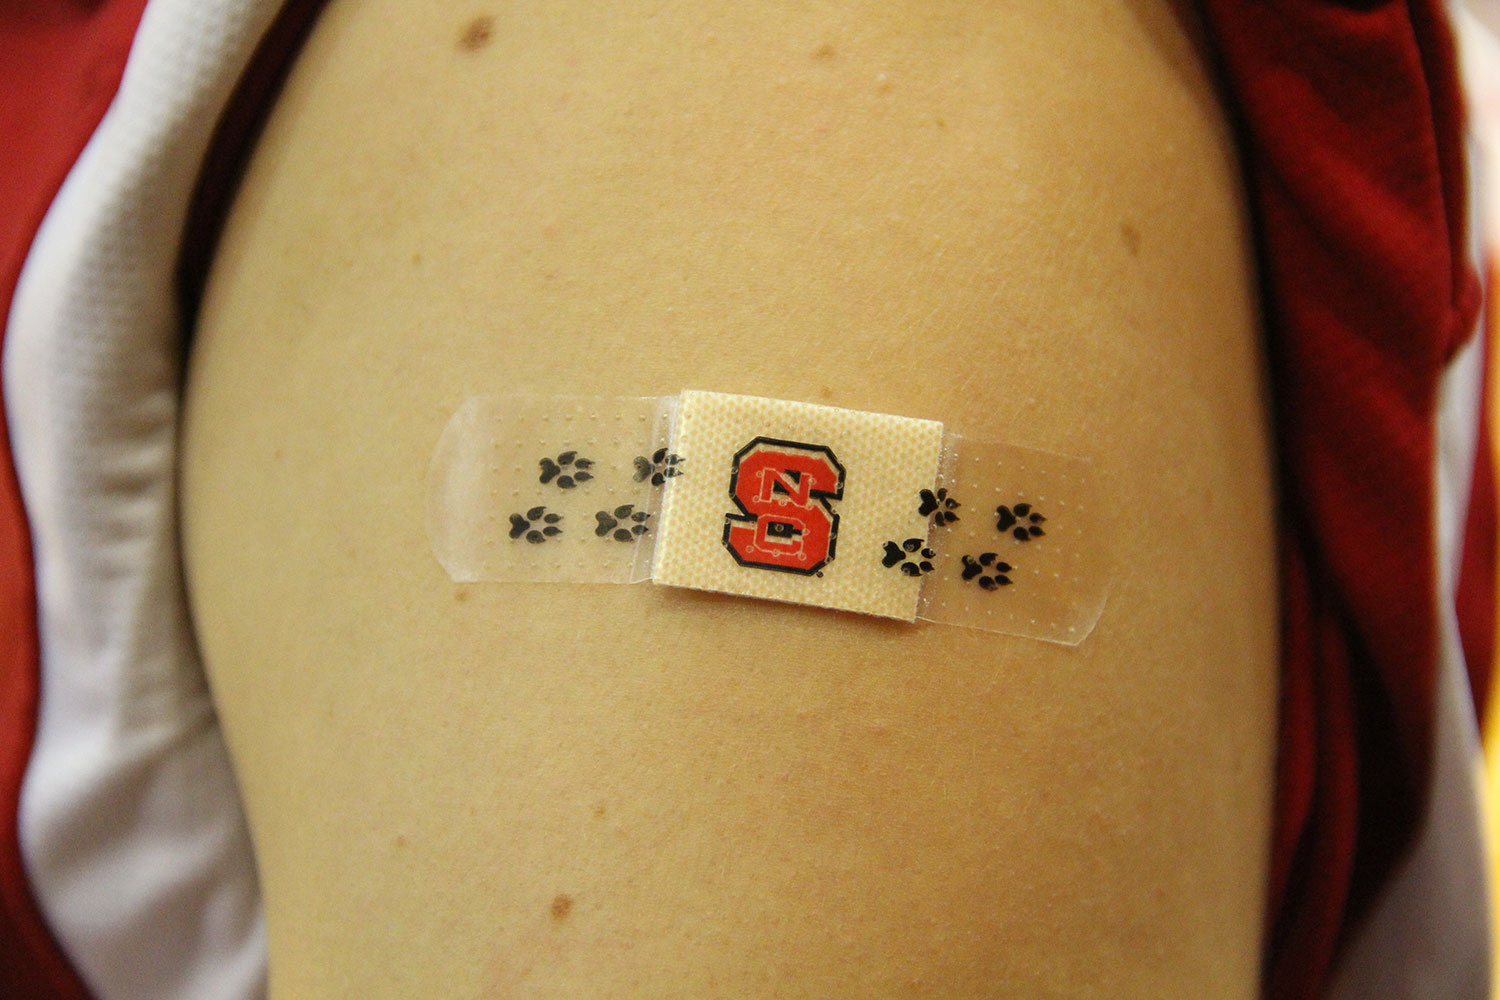 NC State bandage on arm